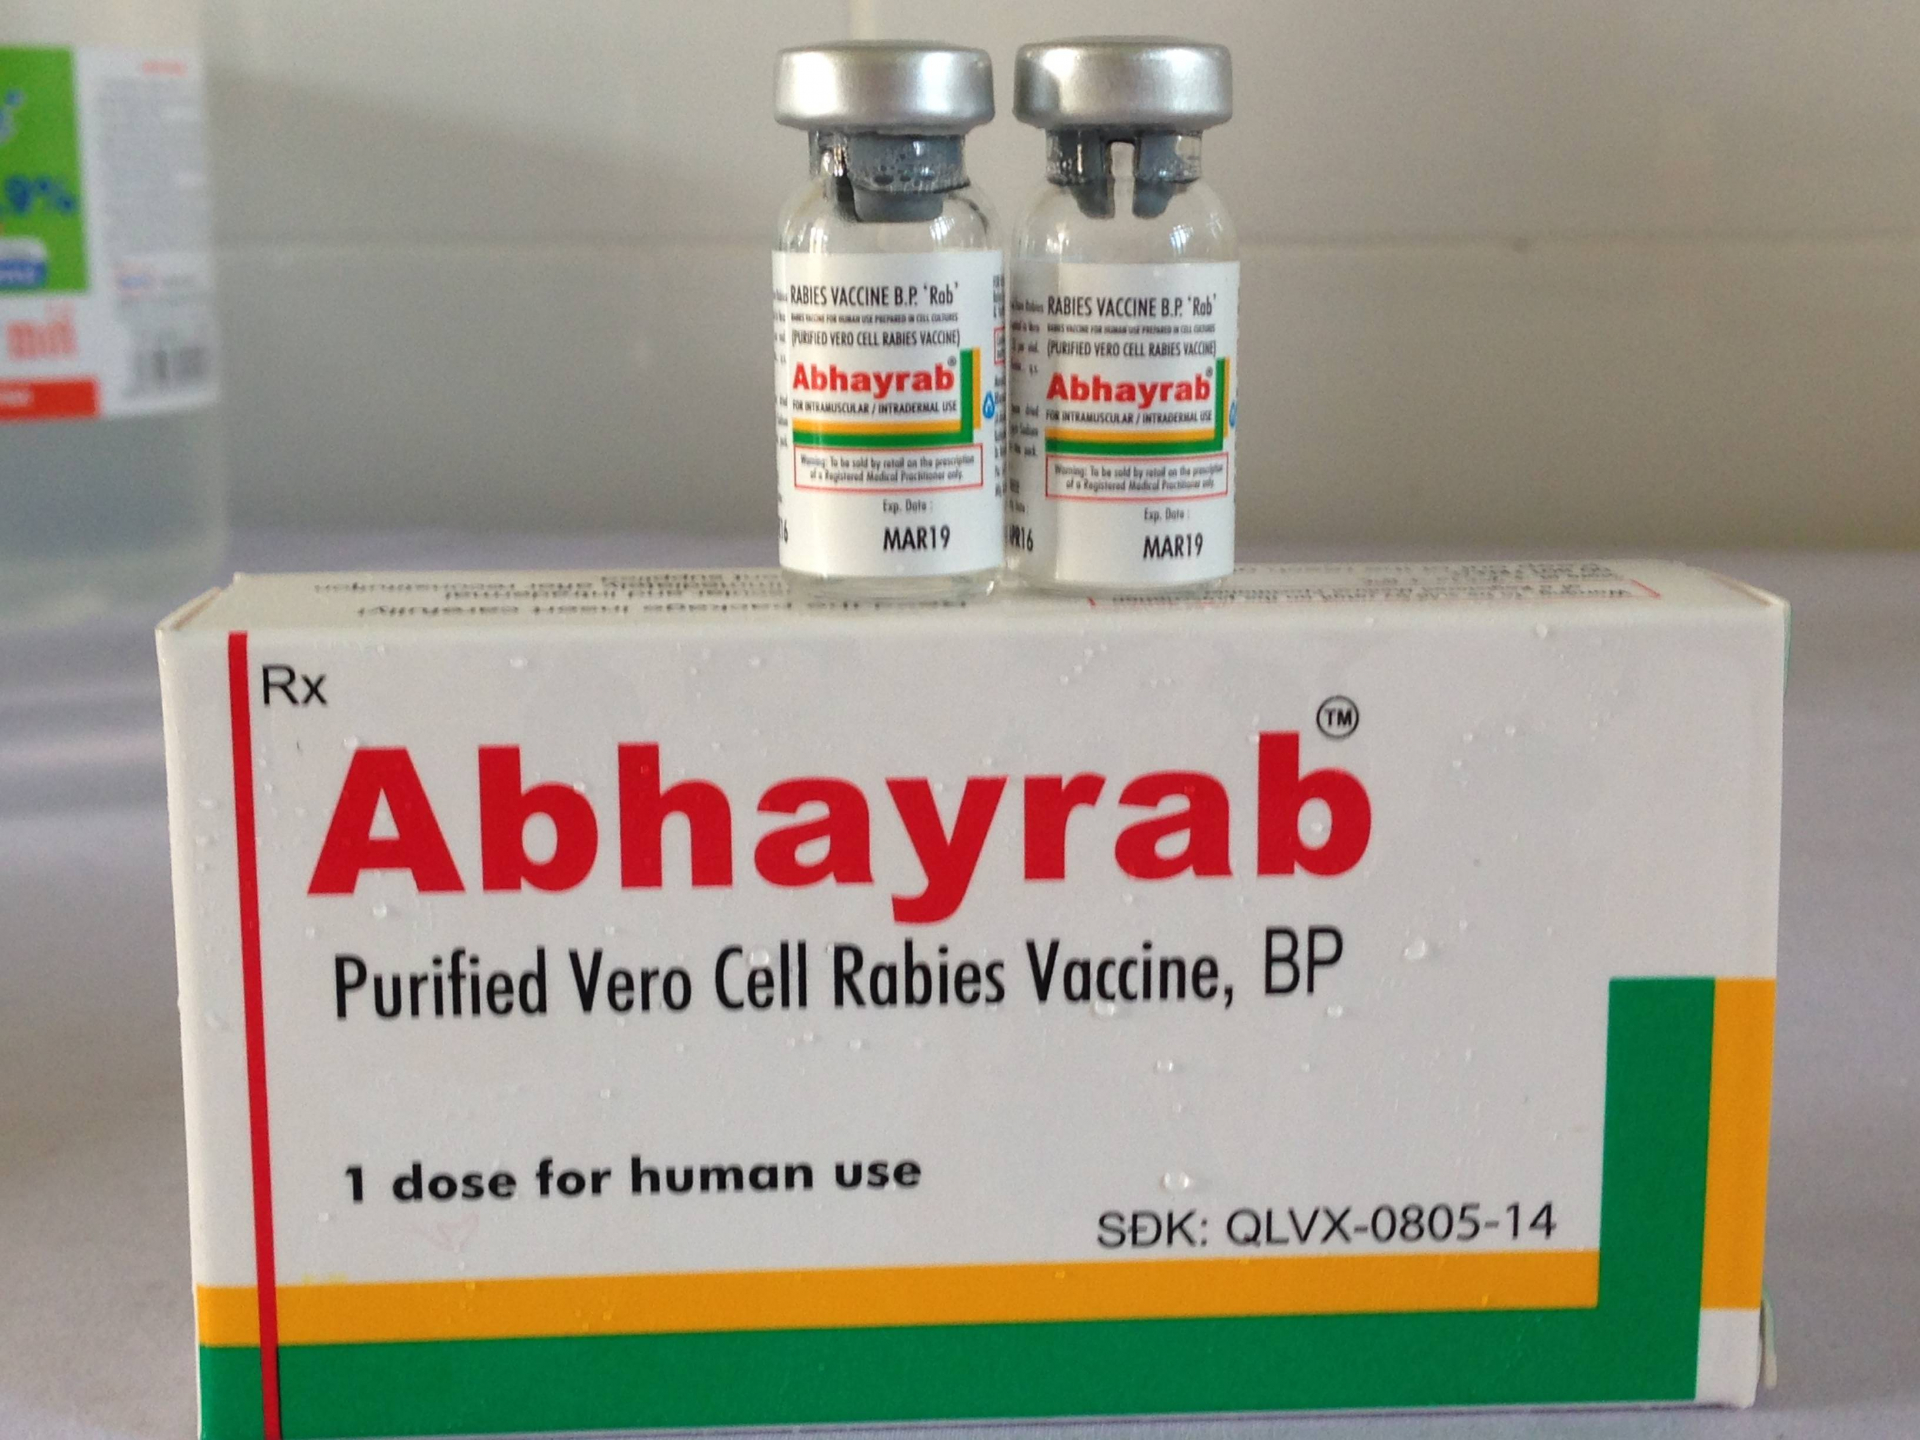 Vắc xin Abhayrab là một trong số 5 loại vắc xin phòng dại được cấp giấy đăng ký lưu hành tại Việt Nam